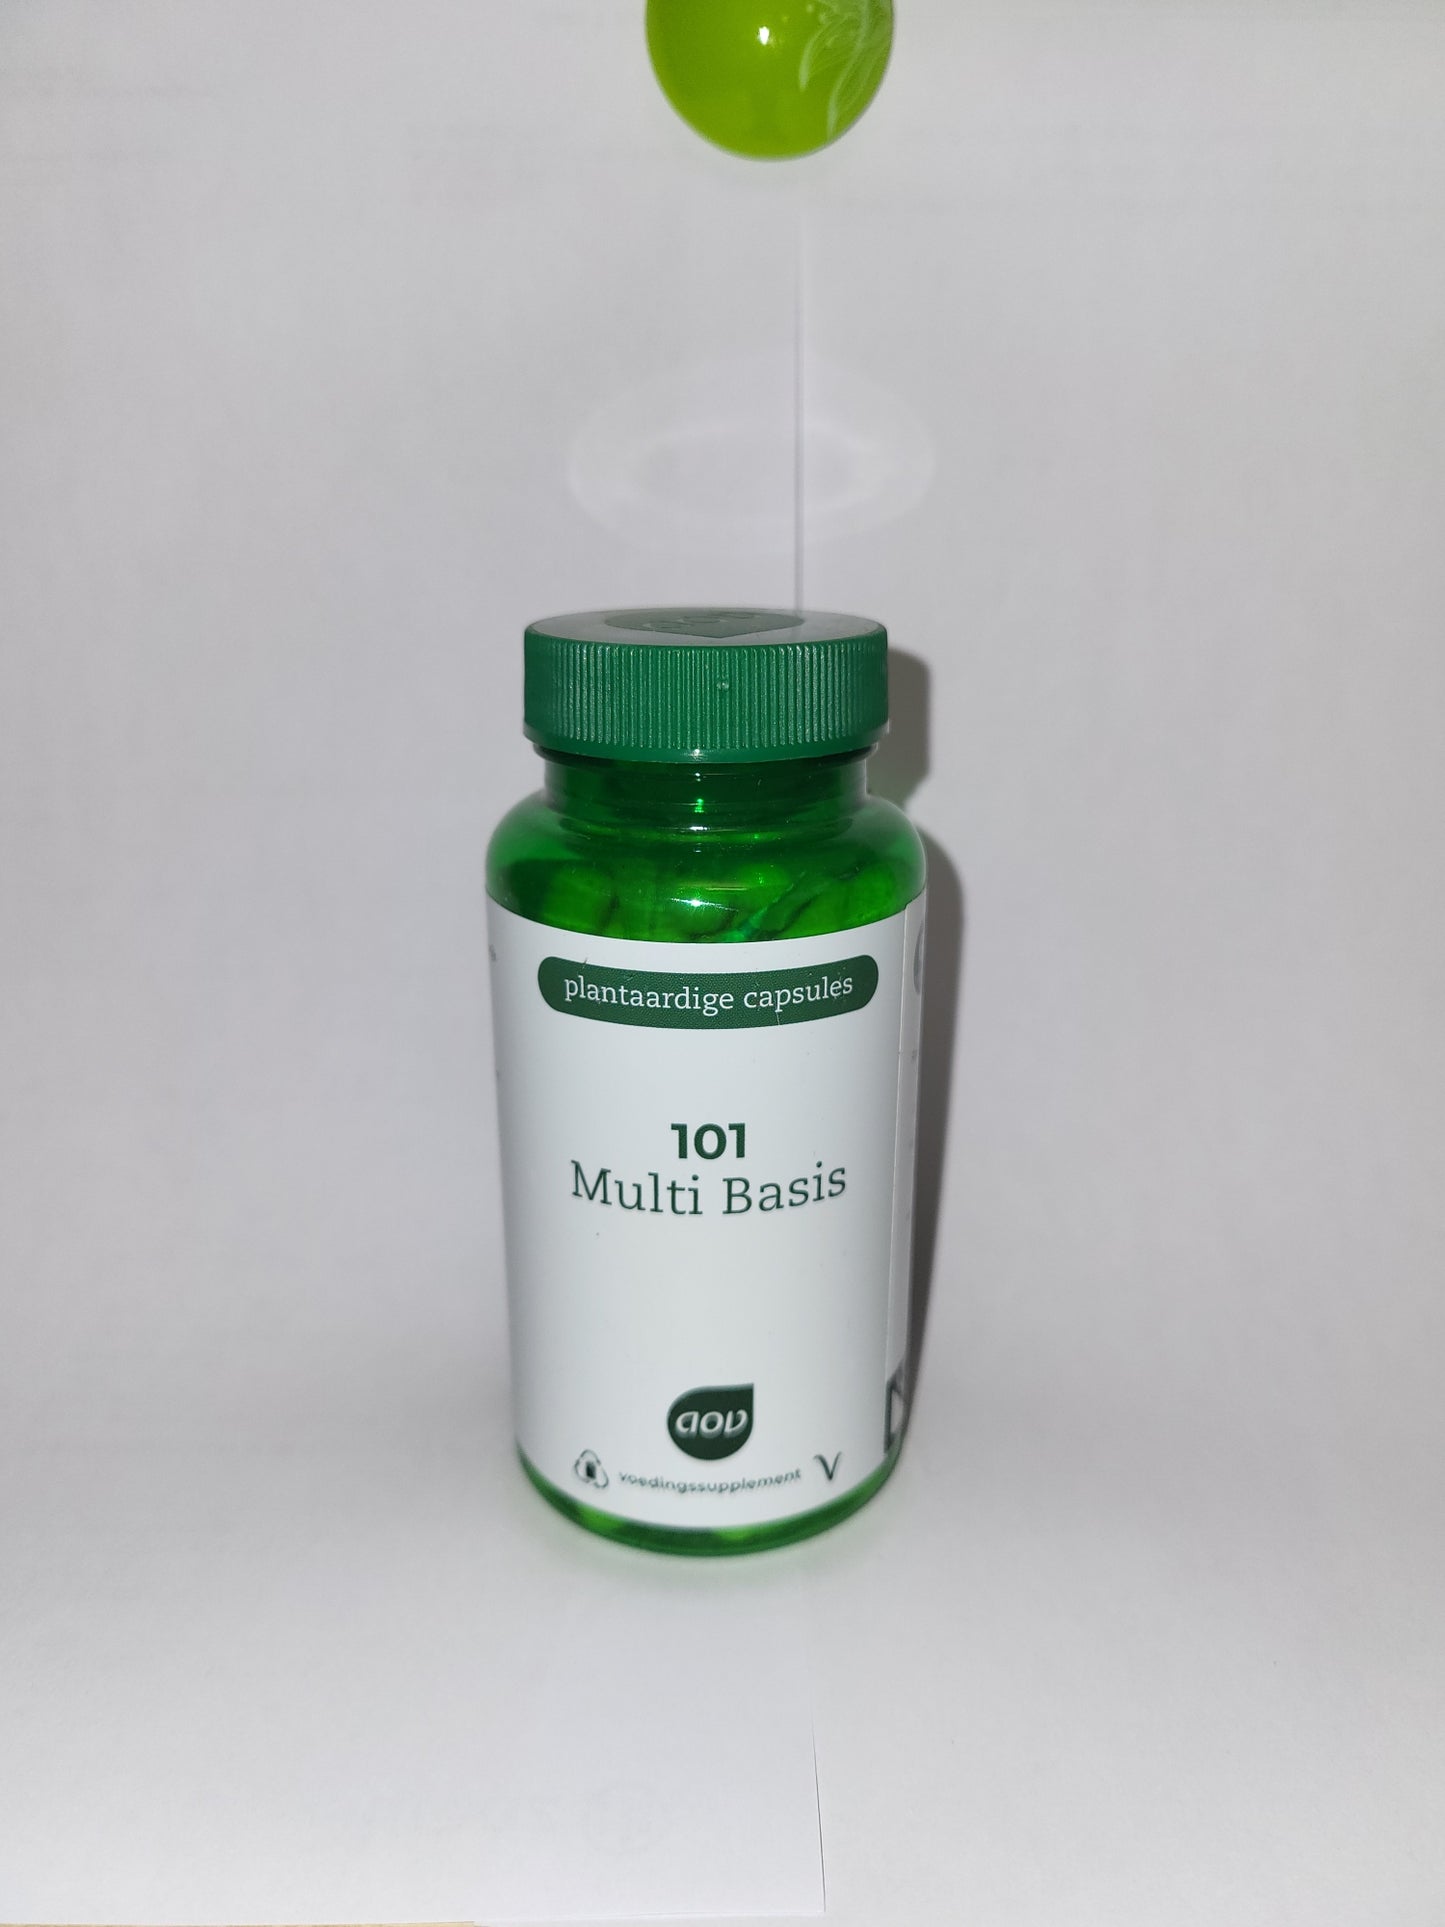 Multi Basis (101) 60 Kapseln - Die perfekte Ergänzung für Ihre tägliche Ernährung - Multivitamin mit bioverfügbaren Vitaminen, Spurenelementen und Mineralien